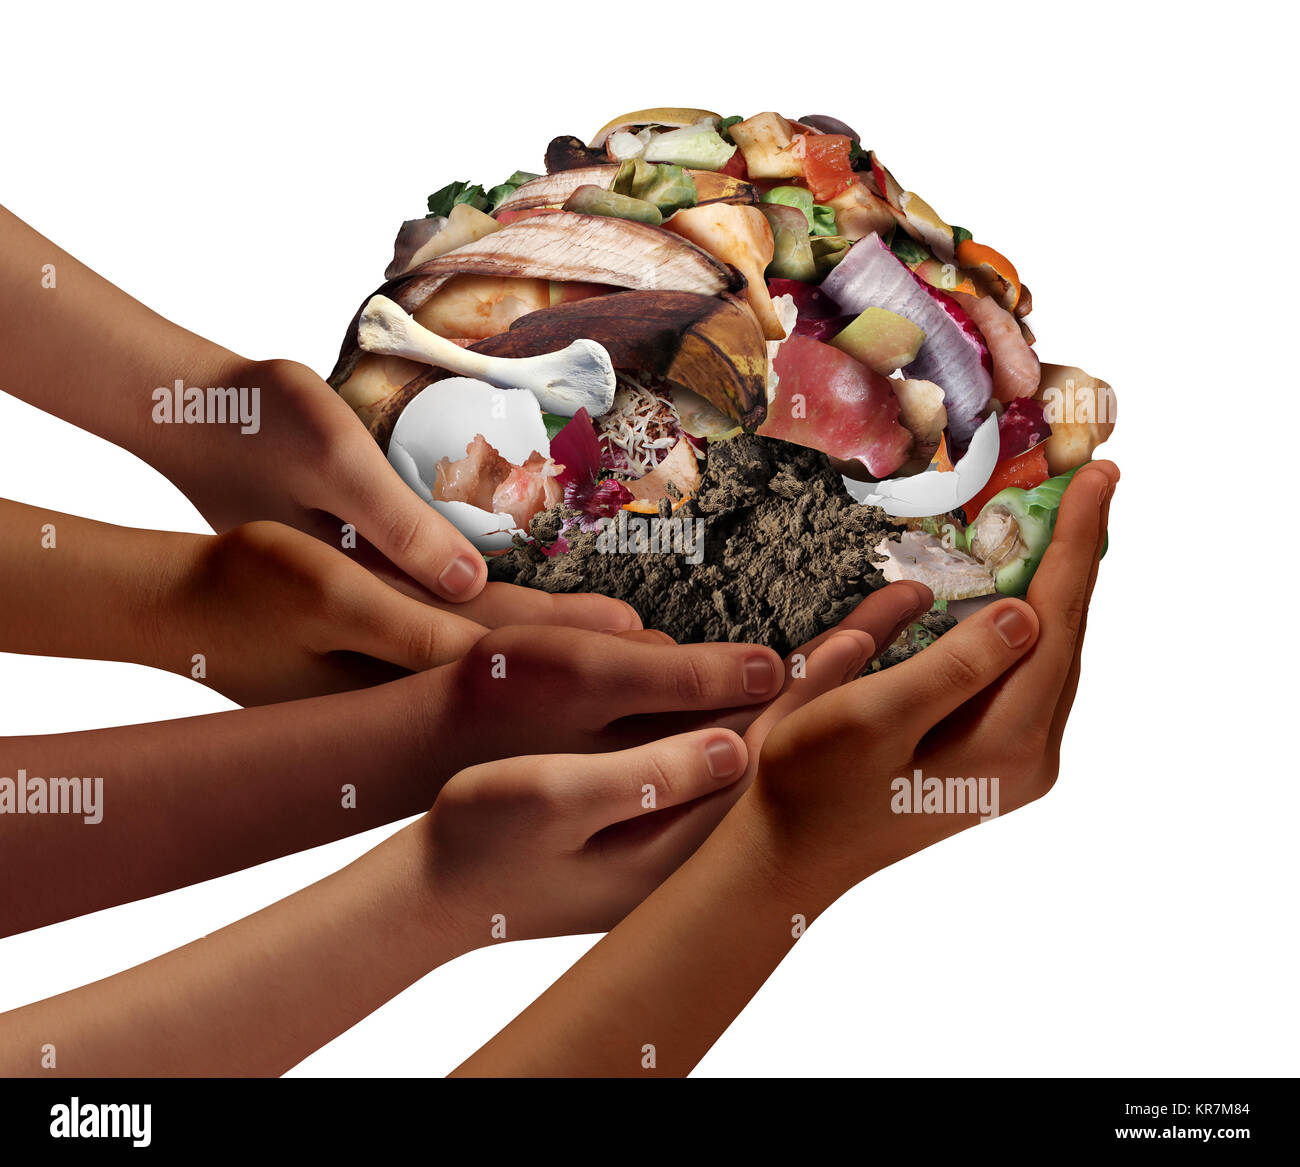 Kompostierung der gemeinschaftlichen Zusammenarbeit Konzept und Kompostierung Symbol so vielfältig Hände halten ein Haufen verrottenden Nahrung Kompost scraps. Stockfoto